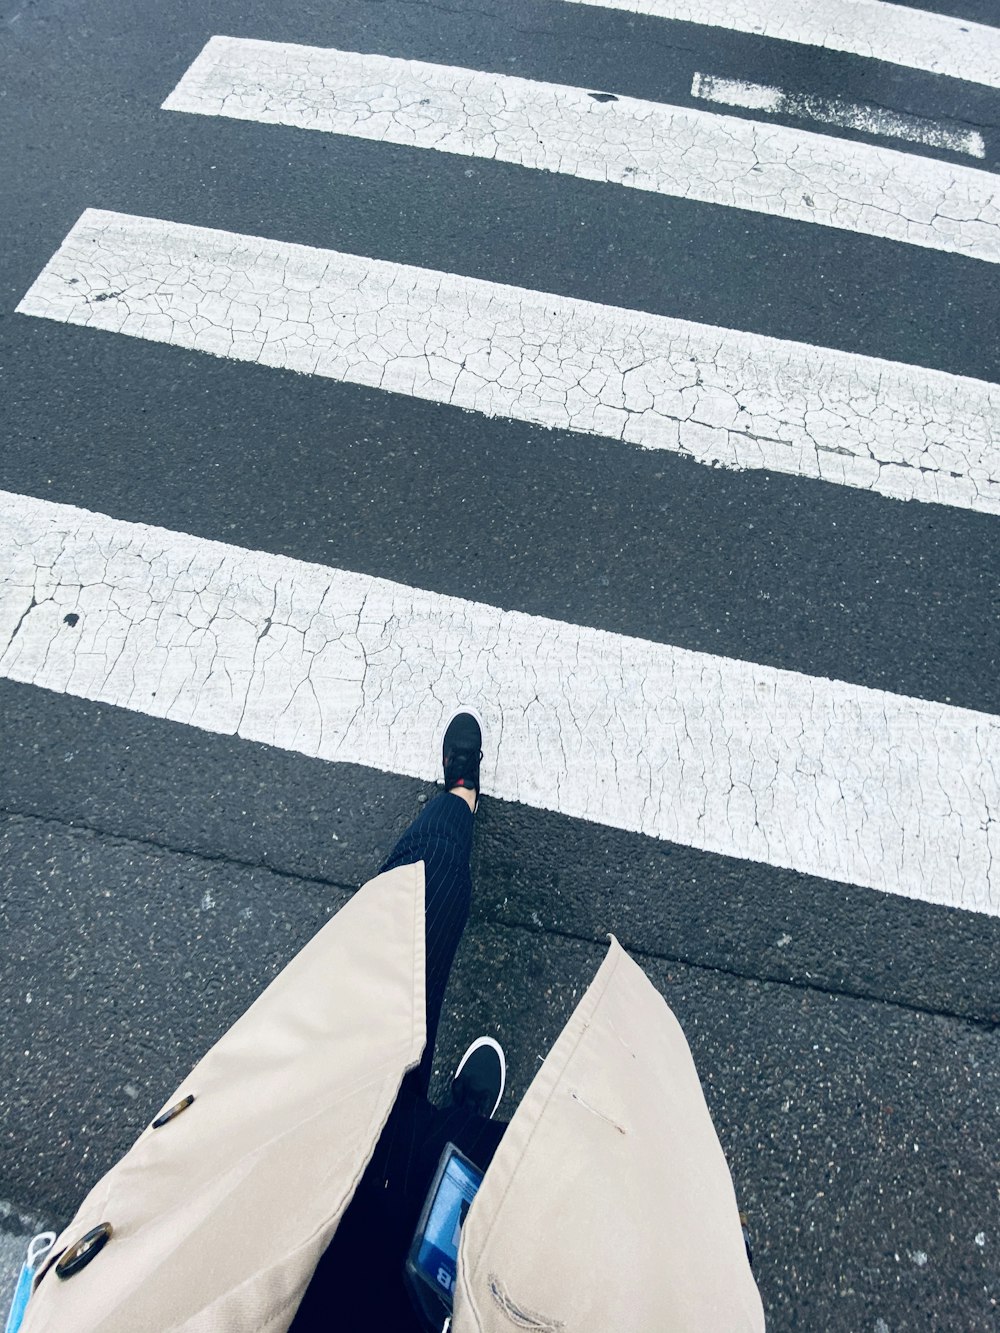 person in blue jacket walking on pedestrian lane during daytime